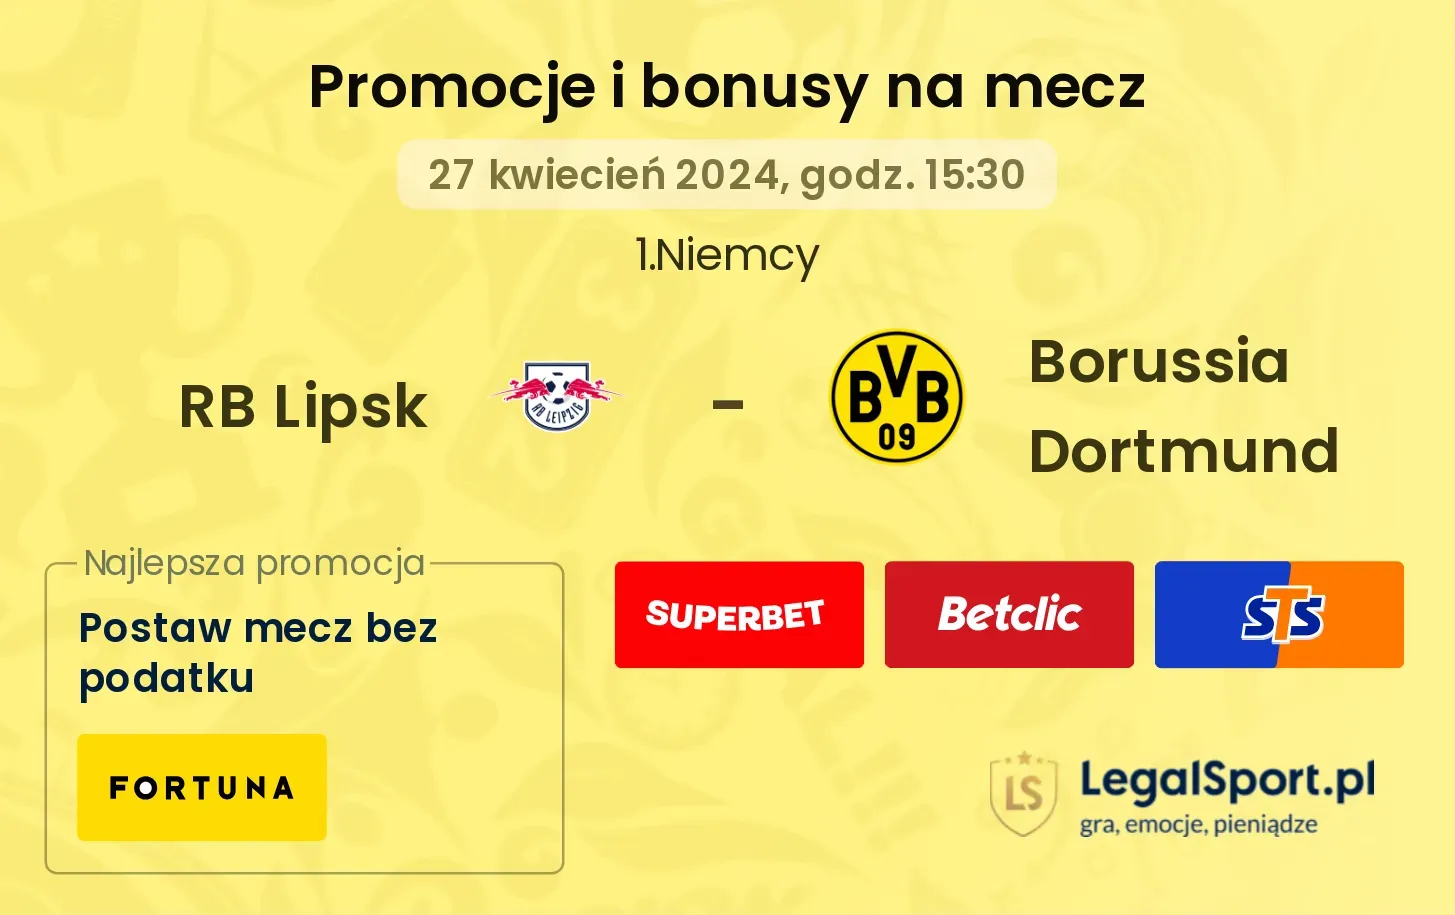 RB Lipsk - Borussia Dortmund promocje bonusy na mecz